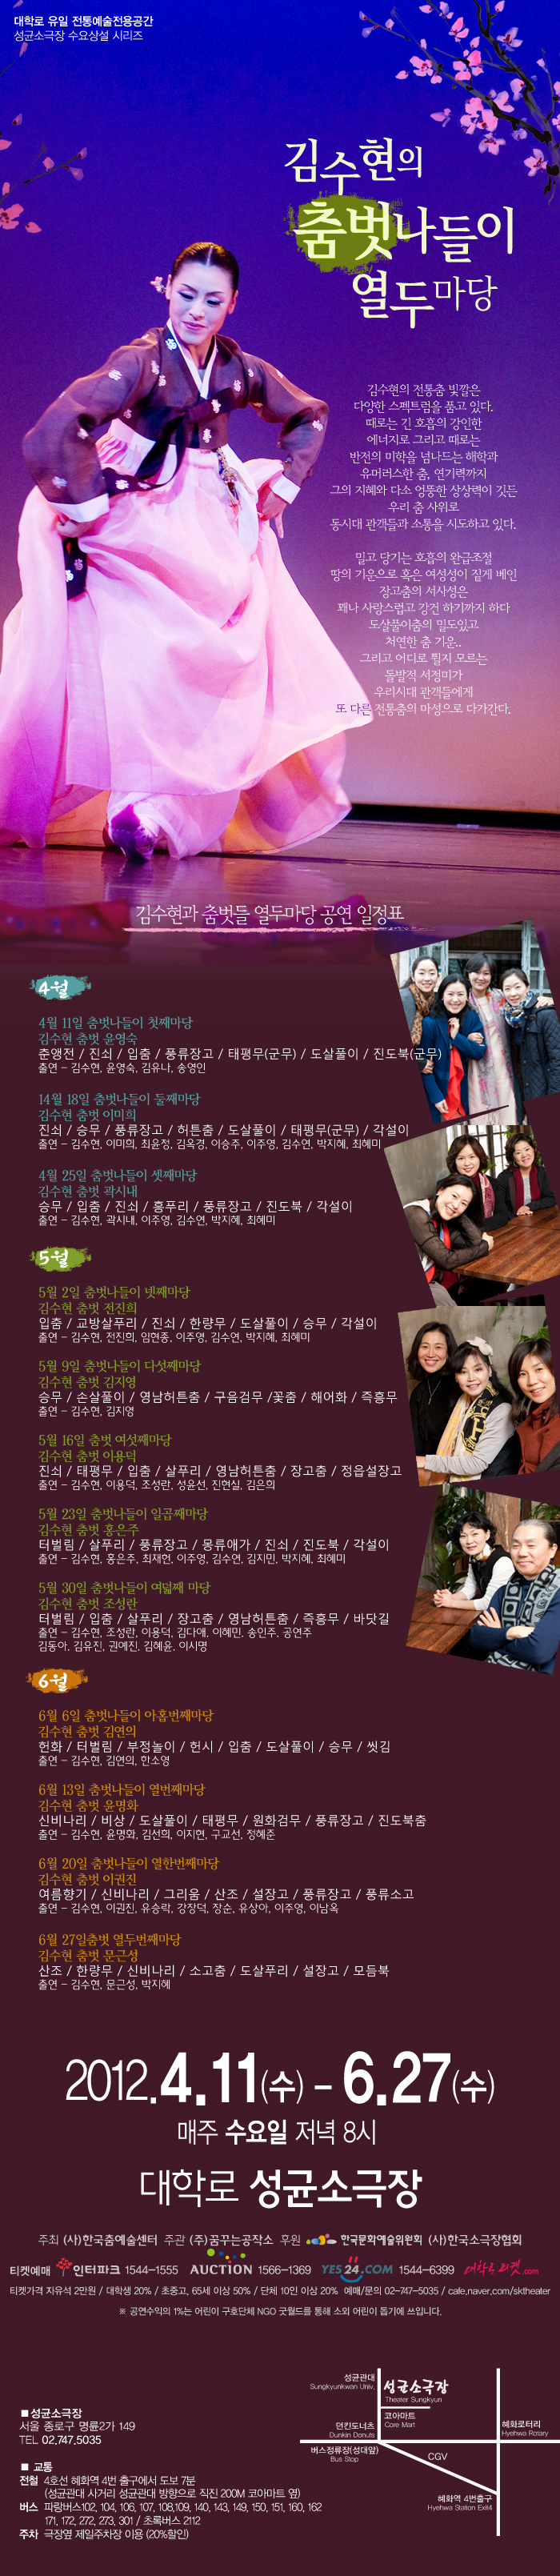 김수현의 춤벗나들이 열두마당 이미지